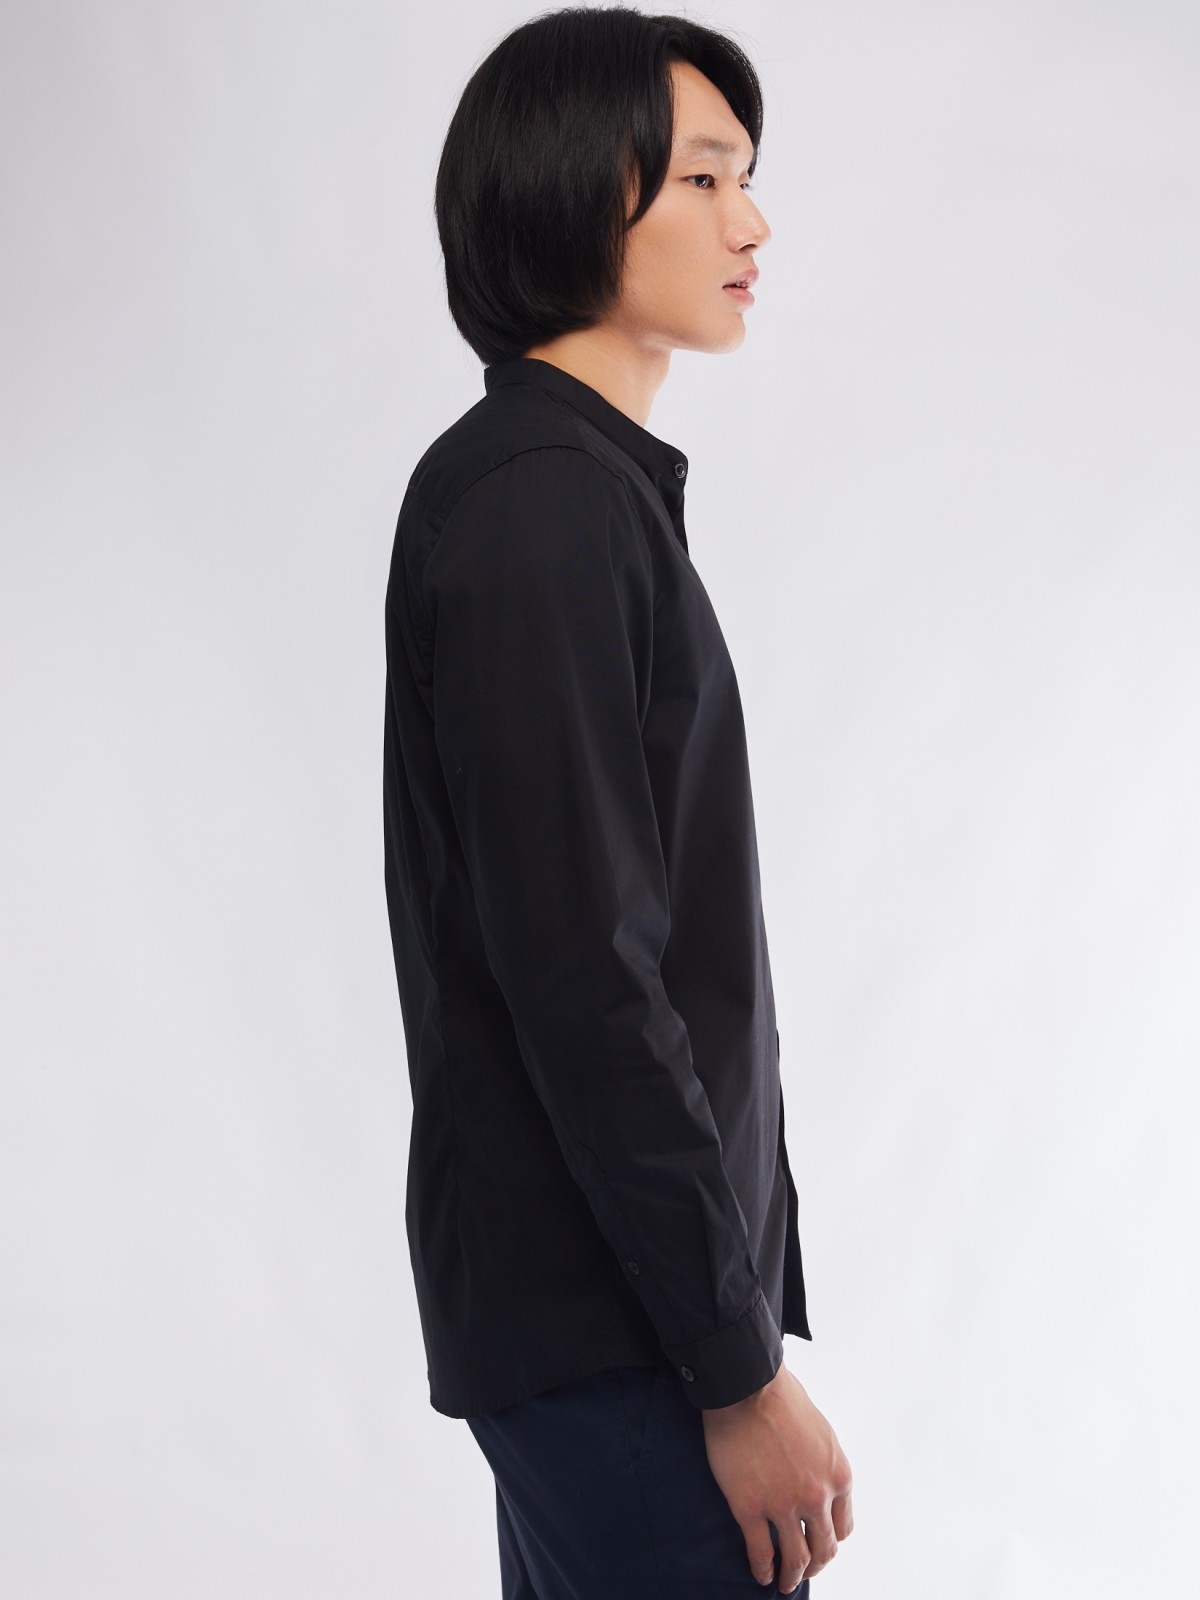 Офисная рубашка с воротником-стойкой и длинным рукавом zolla 01411217W072, цвет черный, размер S - фото 5